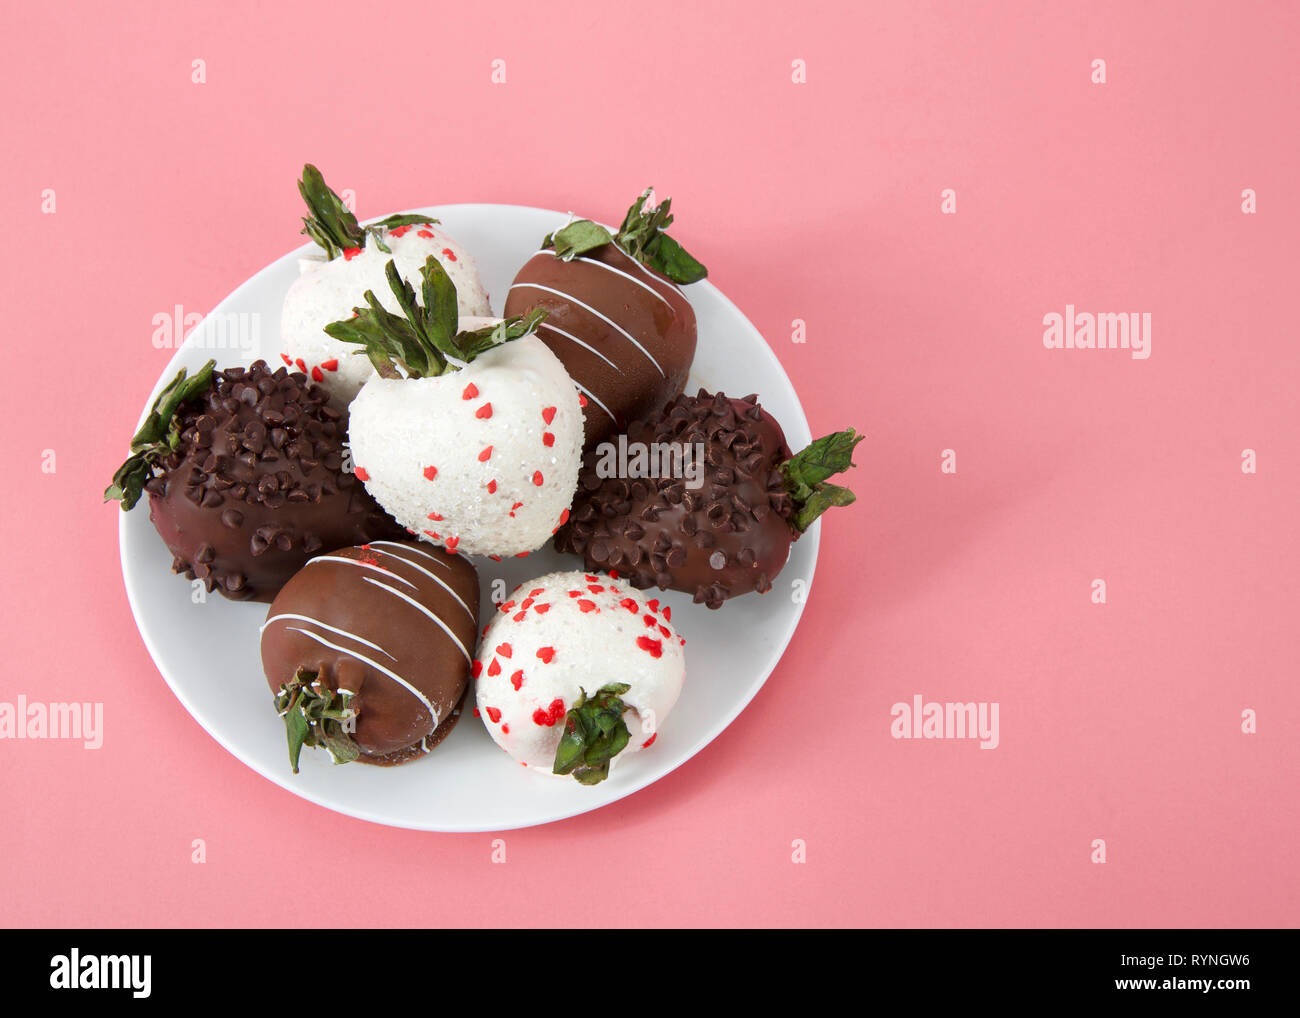 Variété de fraises enrobées de chocolat sur une assiette. Noir, blanc et de chocolat au lait sur fond rose. Vue d'en haut. Banque D'Images